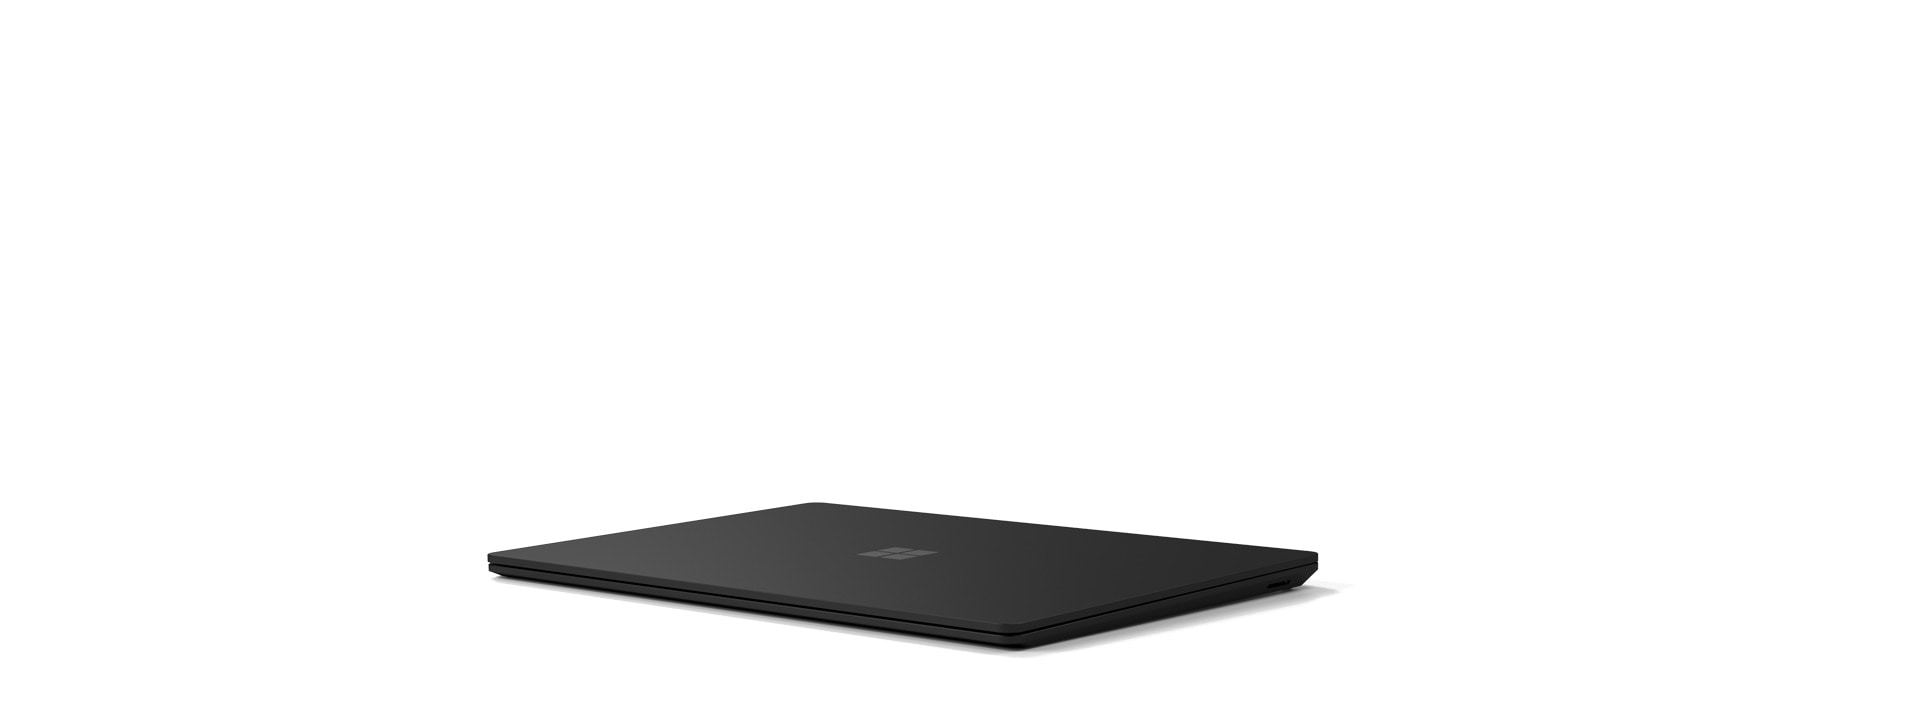 عرض جهاز Surface Laptop 4 في الوضع المغلق.